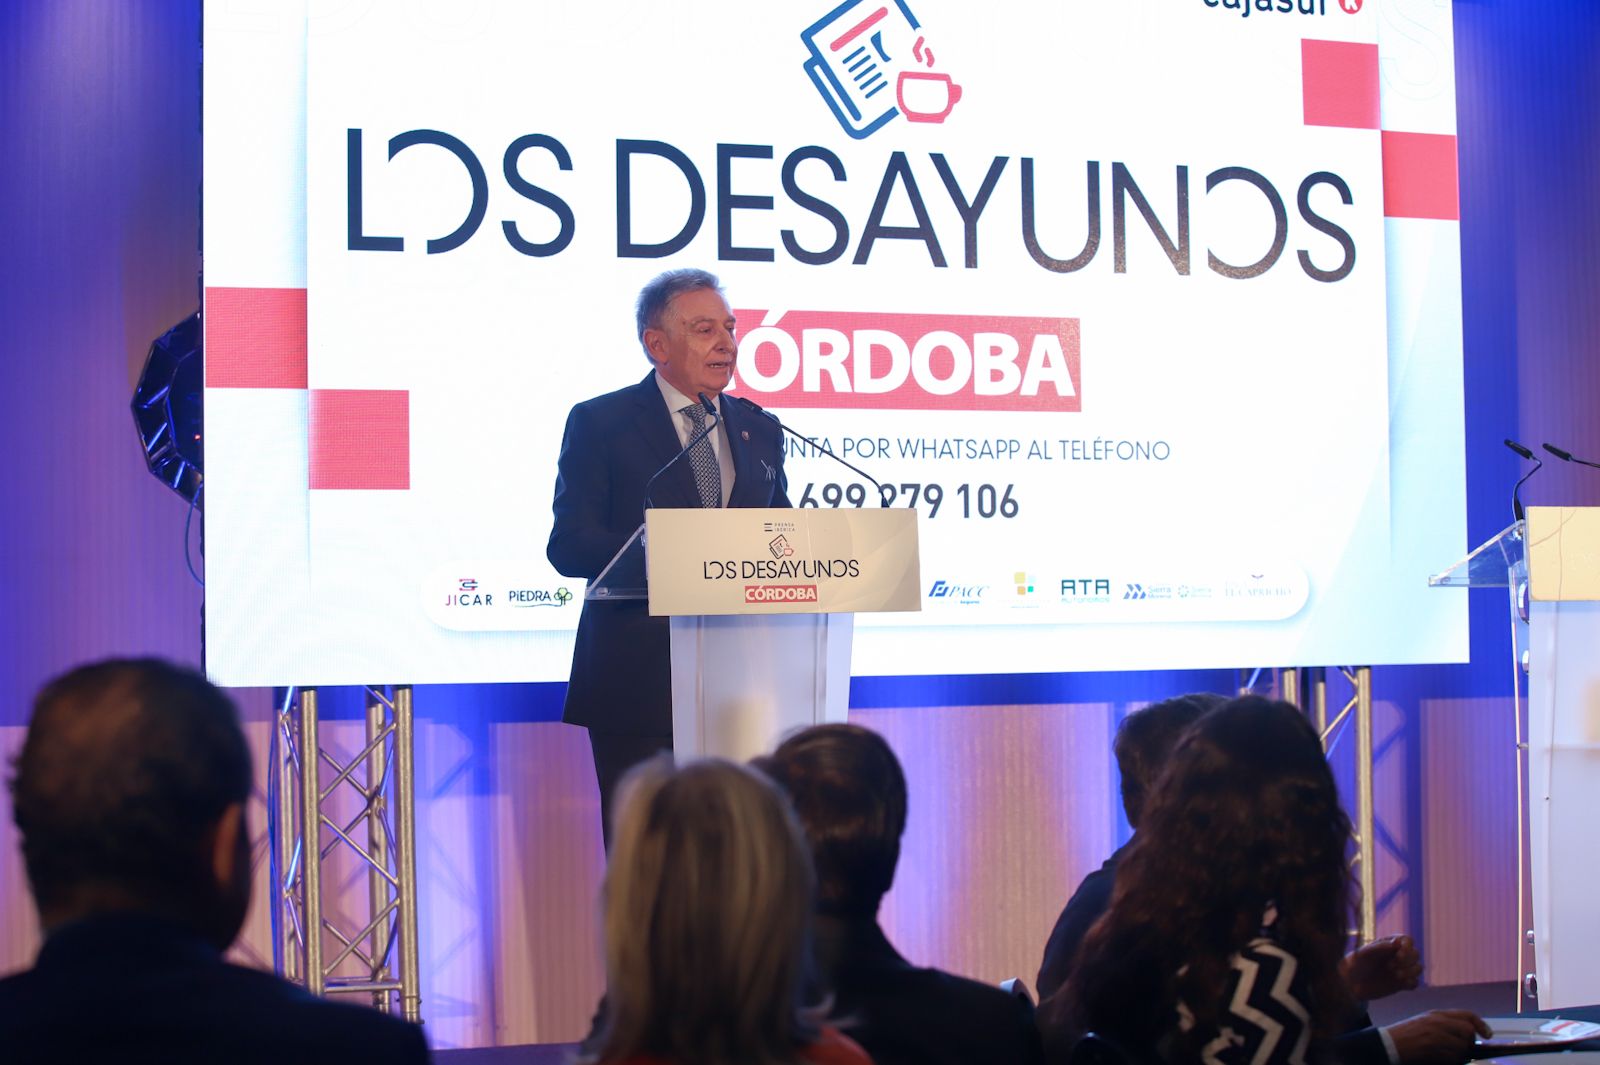 En imágenes | El presidente del TSJA, Lorenzo del Río, en Los Desayunos de CÓRDOBA